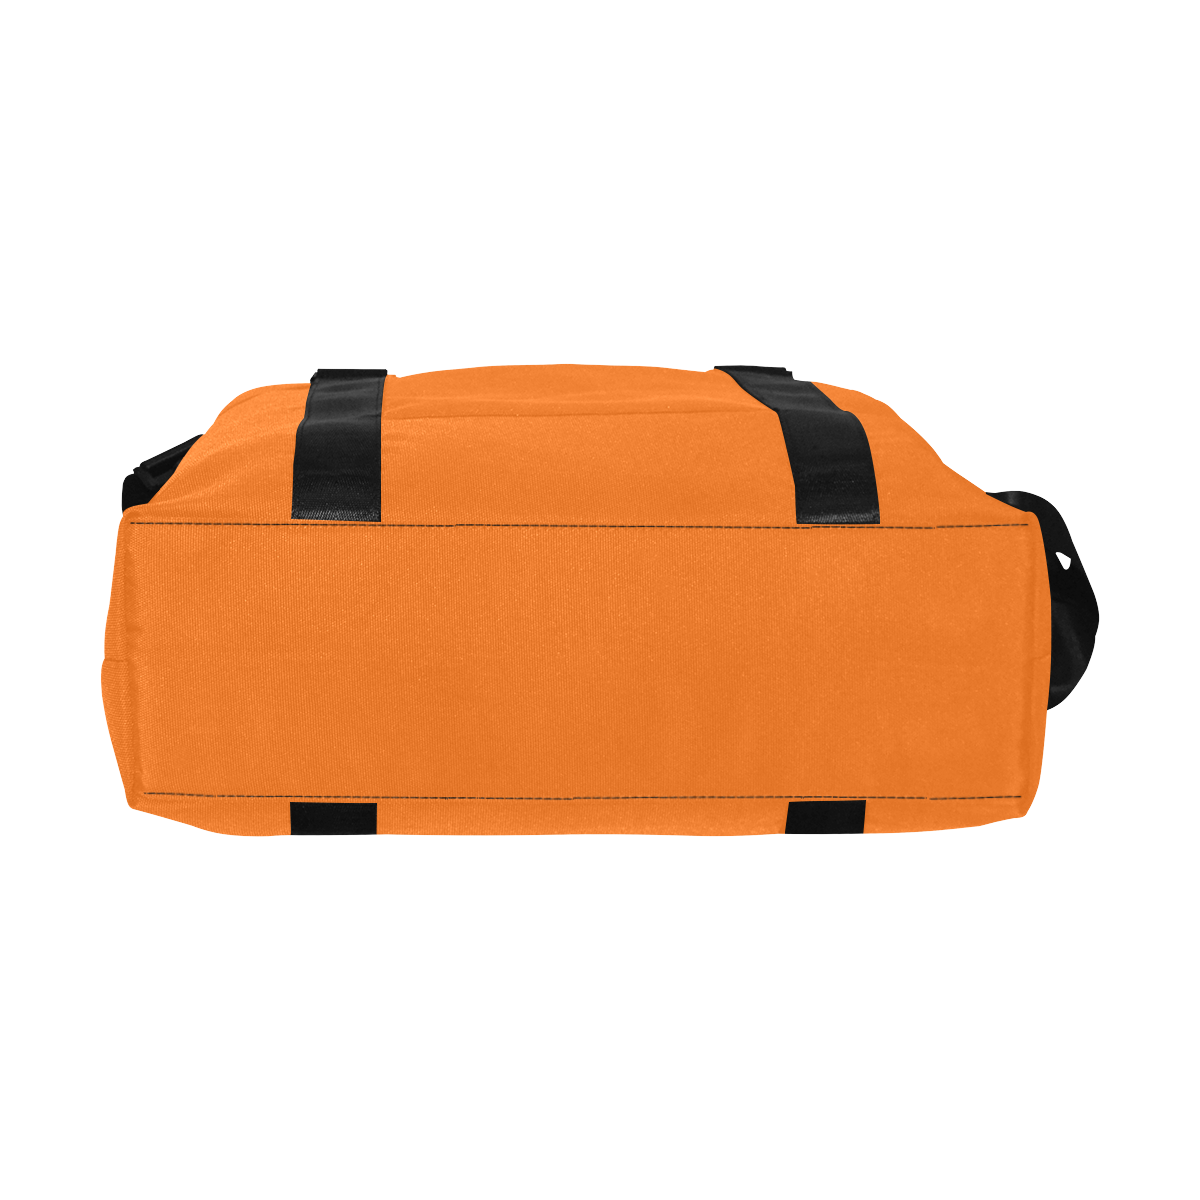 color pumpkin Large Capacity Duffle Bag (Model 1715)